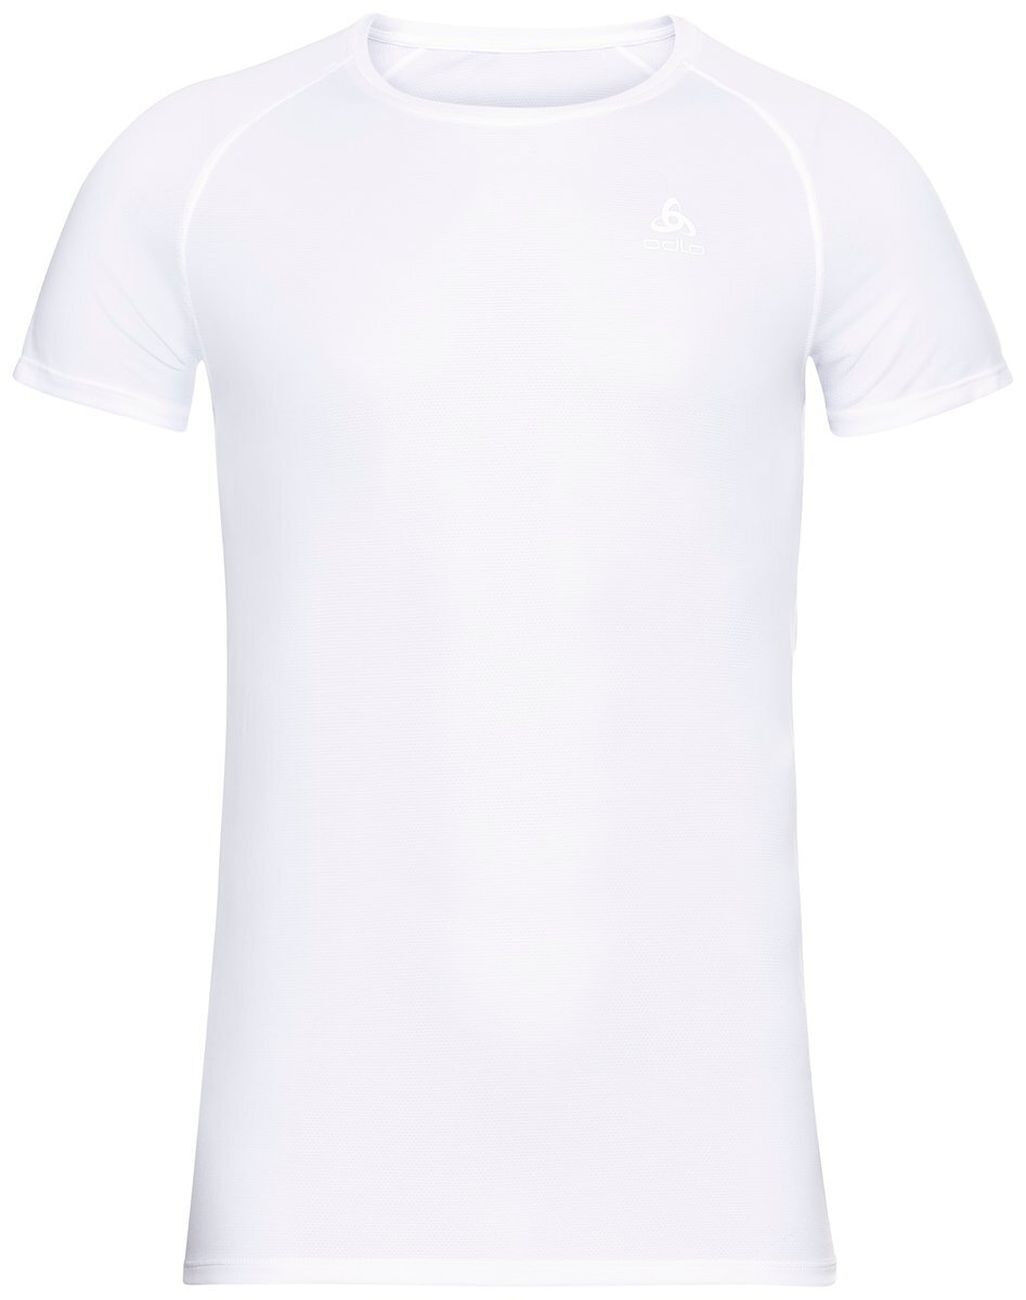 Odlo Active F-Dry Light Eco - T-shirt - Men's